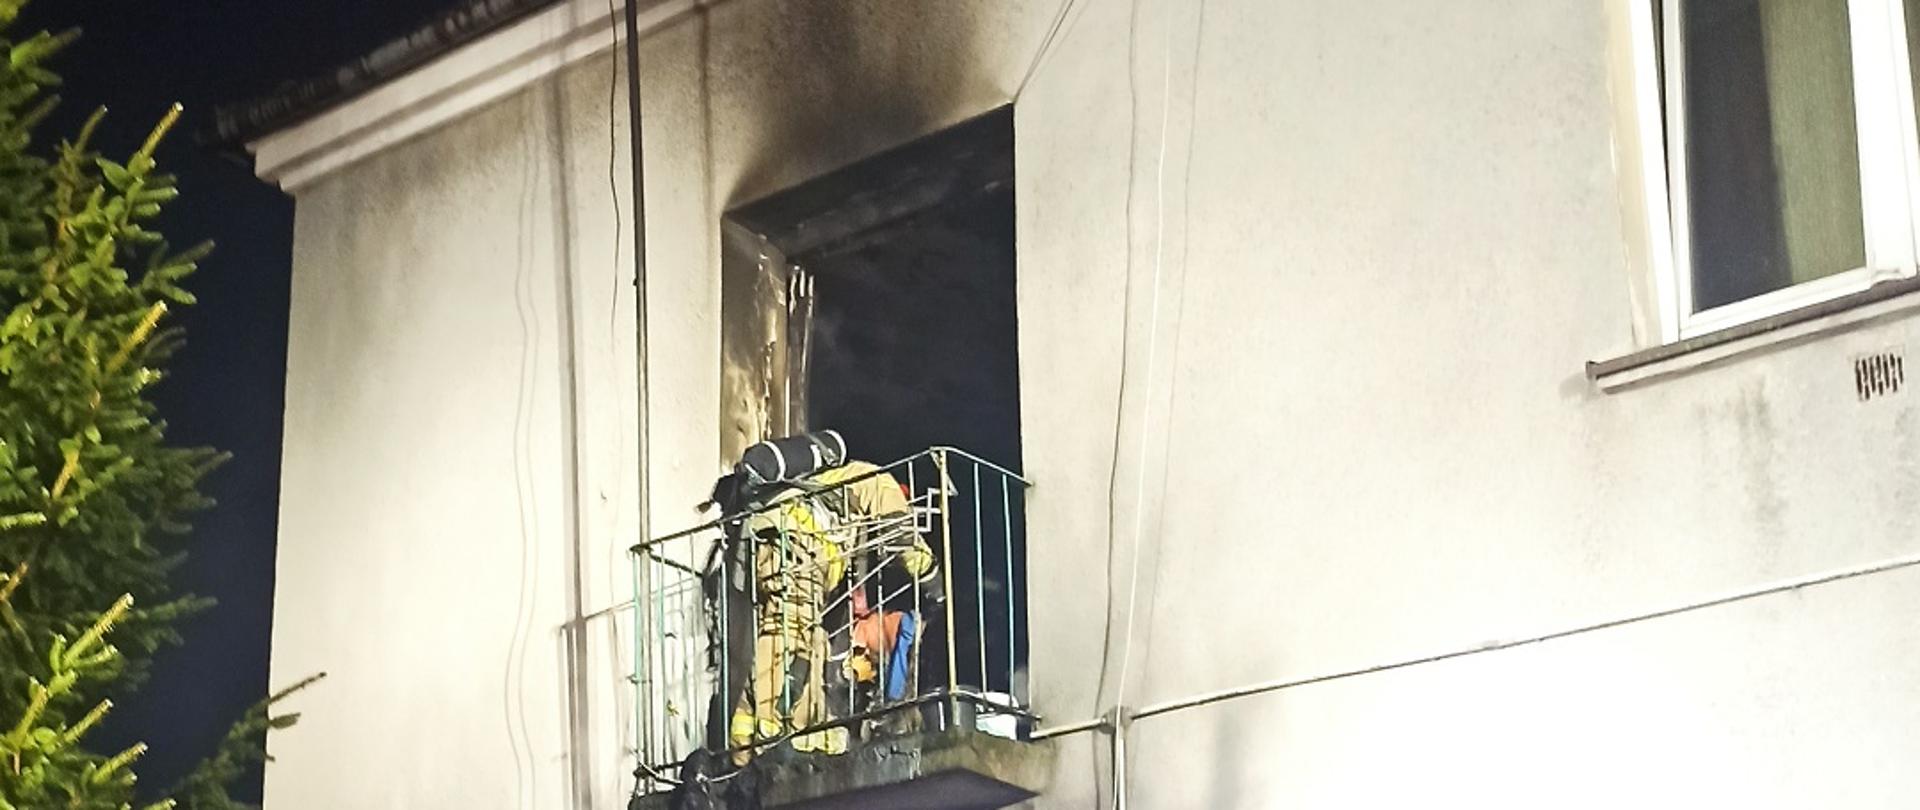 Zdjęcie obrazuje strażaka pracującego na balkonie budynku wielokondygnacyjnego na ścianie widoczne oznaki pożaru